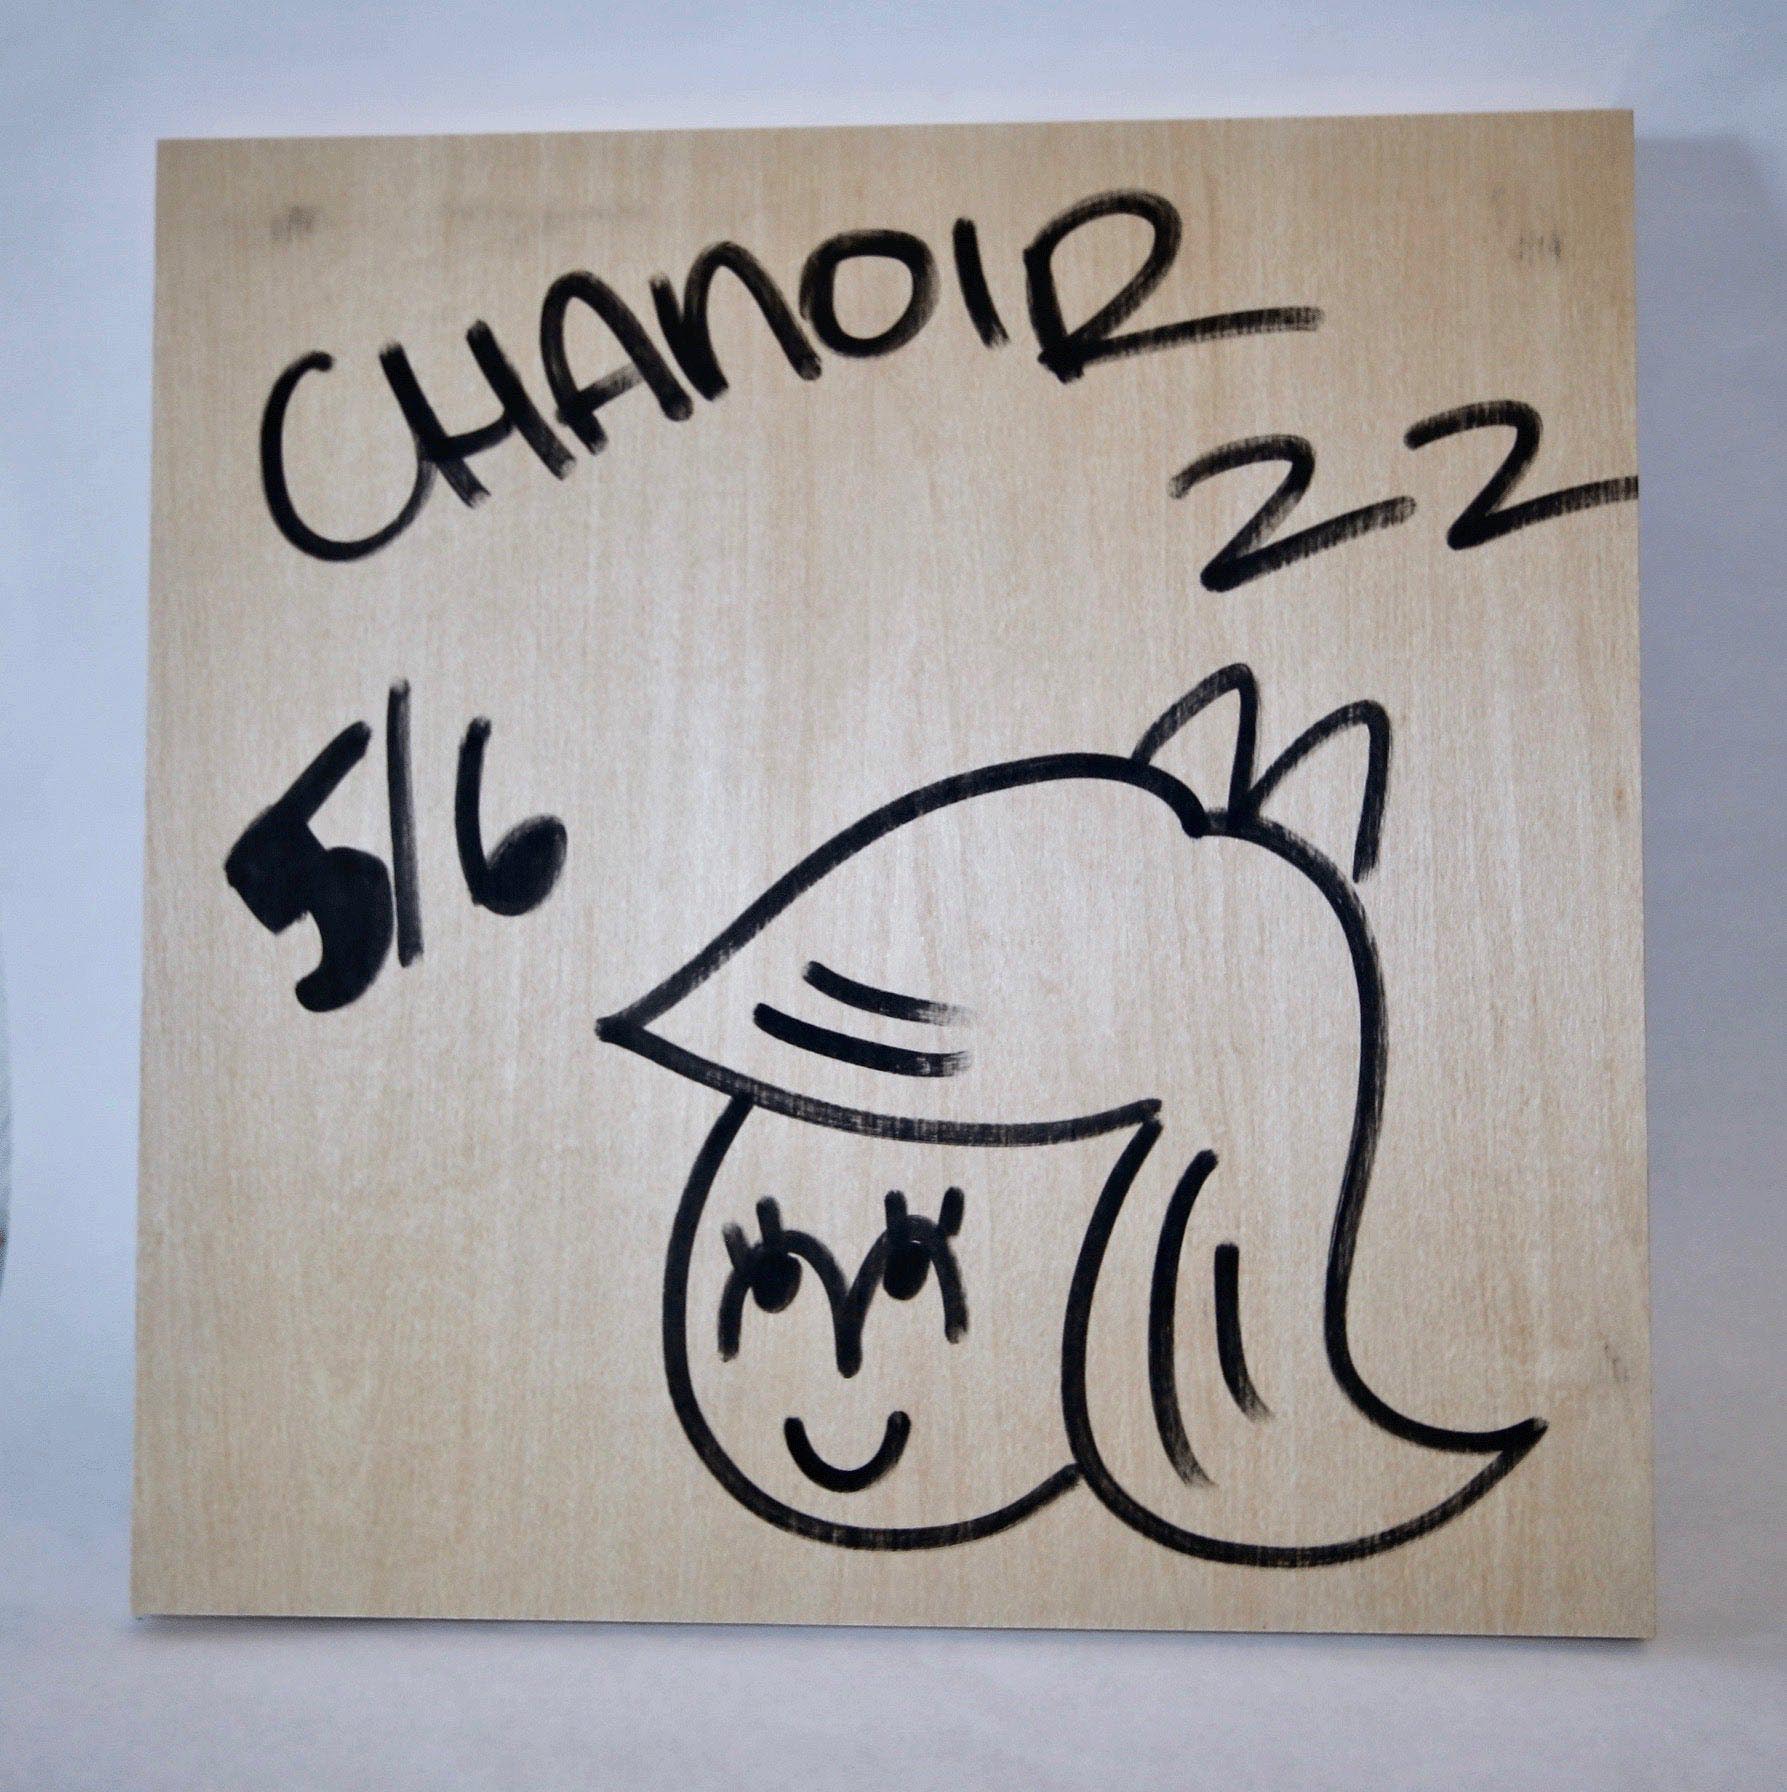 CHANOIR Edition - "GRAFFEUR33"